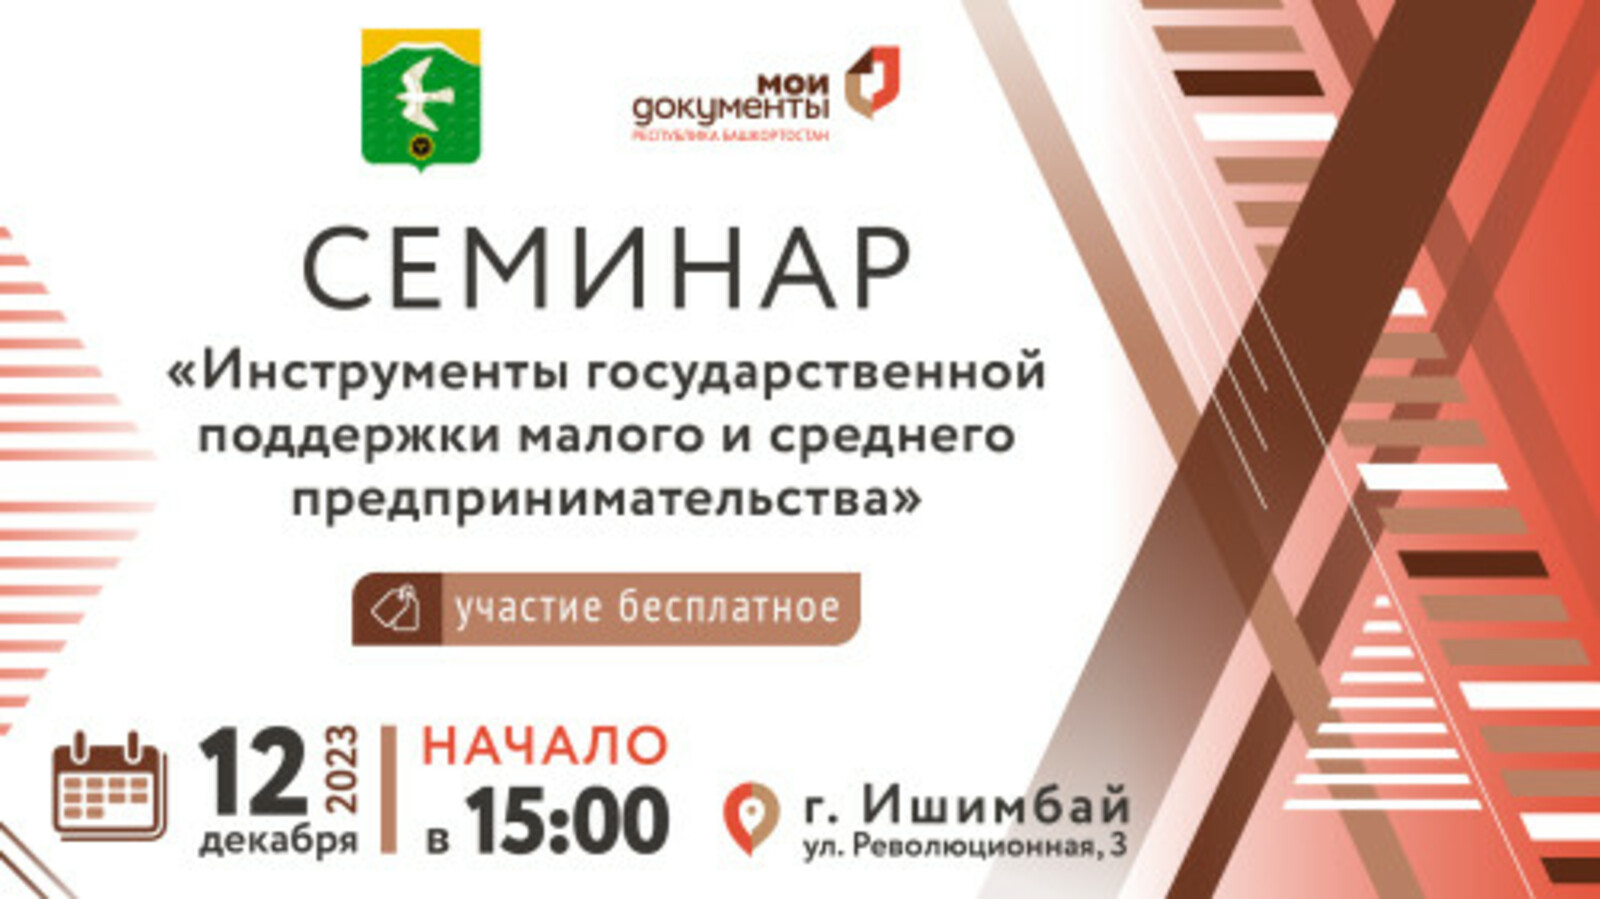 МФЦ Башкортостана приглашает на семинар для предпринимателей в городе Ишимбай